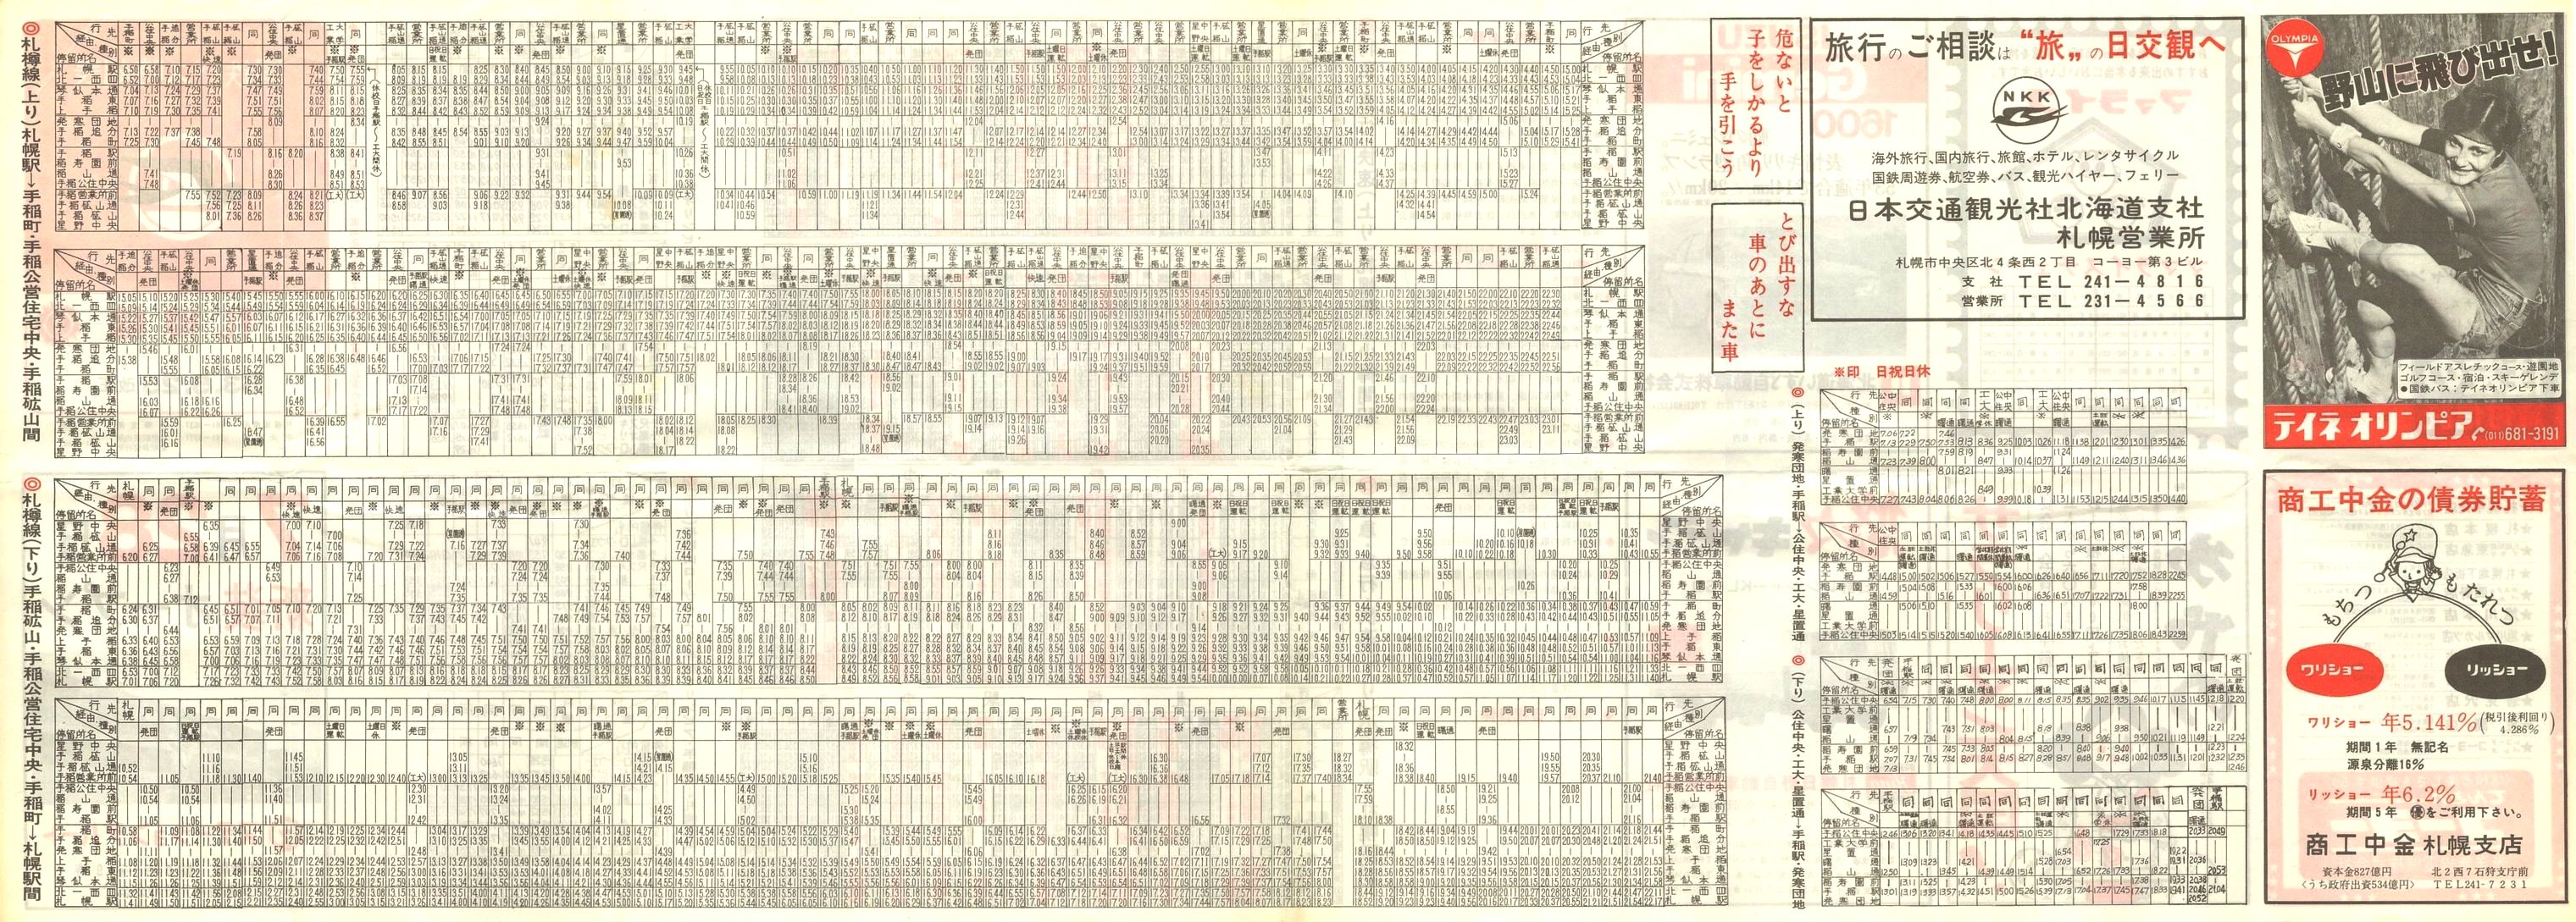 1978-05-25改正_国鉄バス_札樽線時刻表裏面